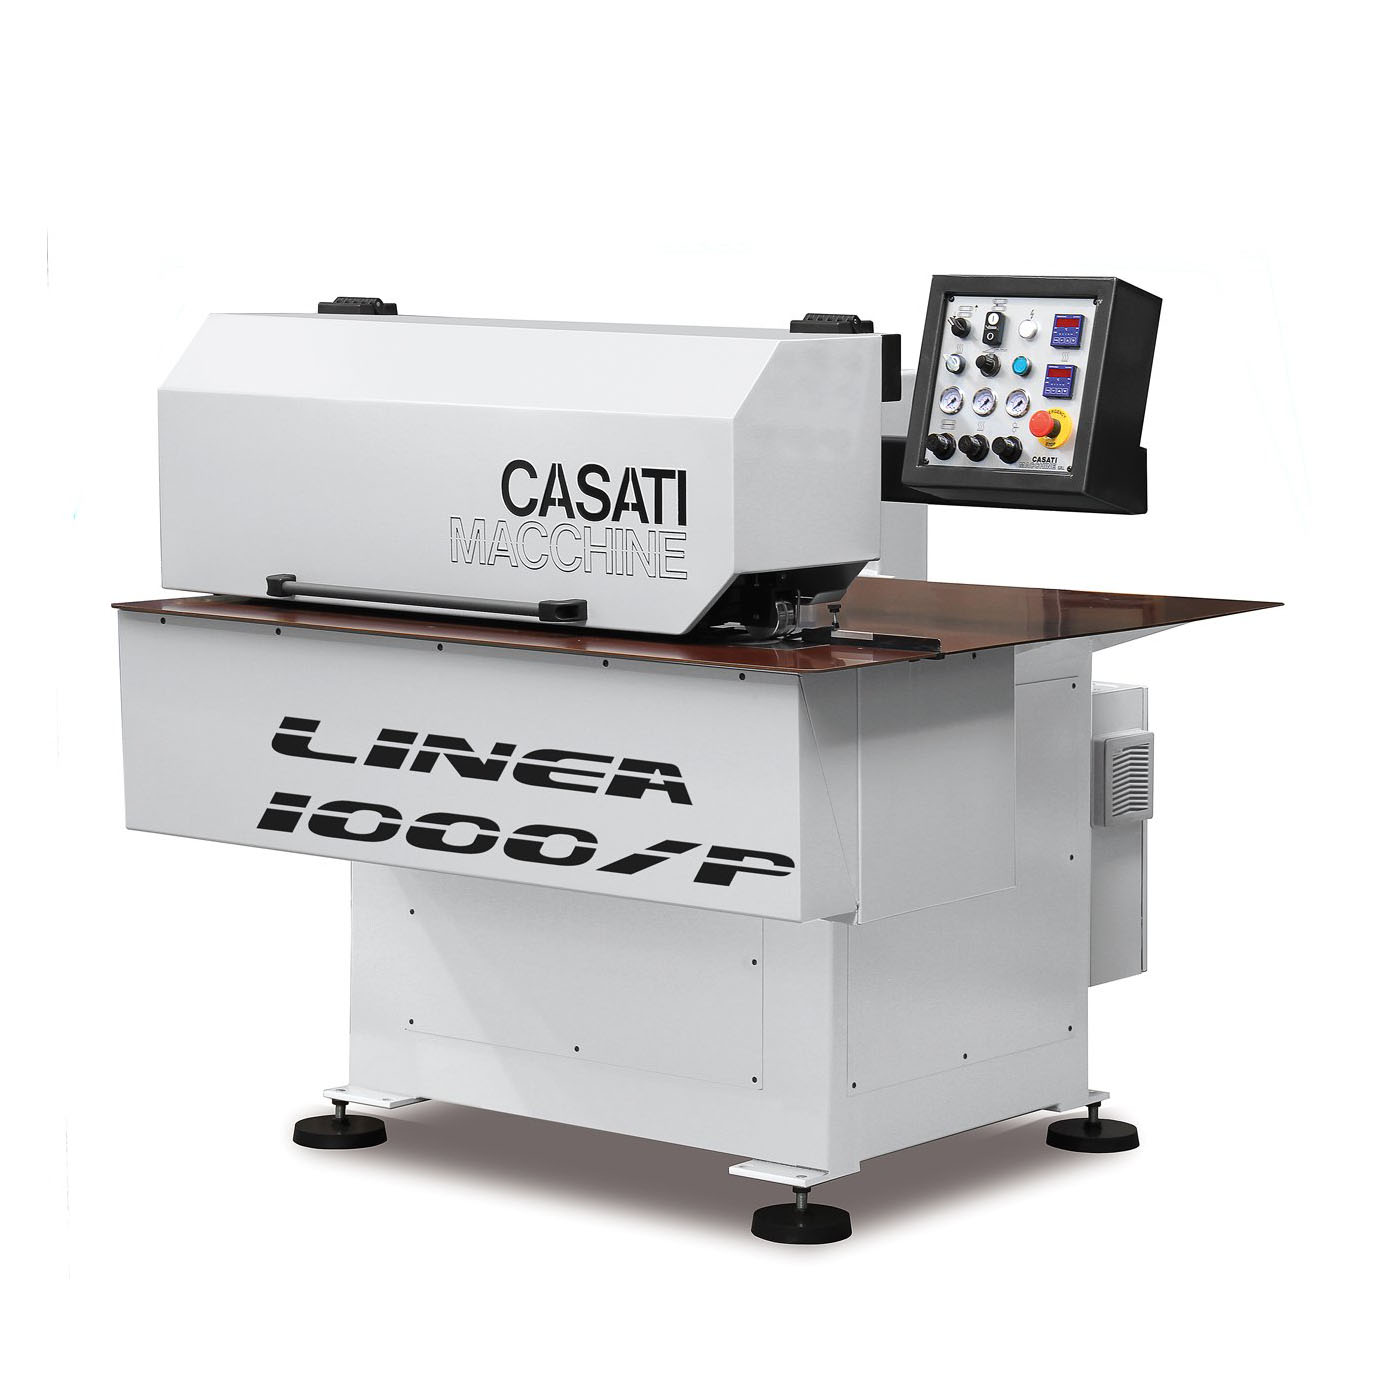 Casati Longitudinal Veneer Splicer Linea 1000 Plus With Integrated Gluing Device